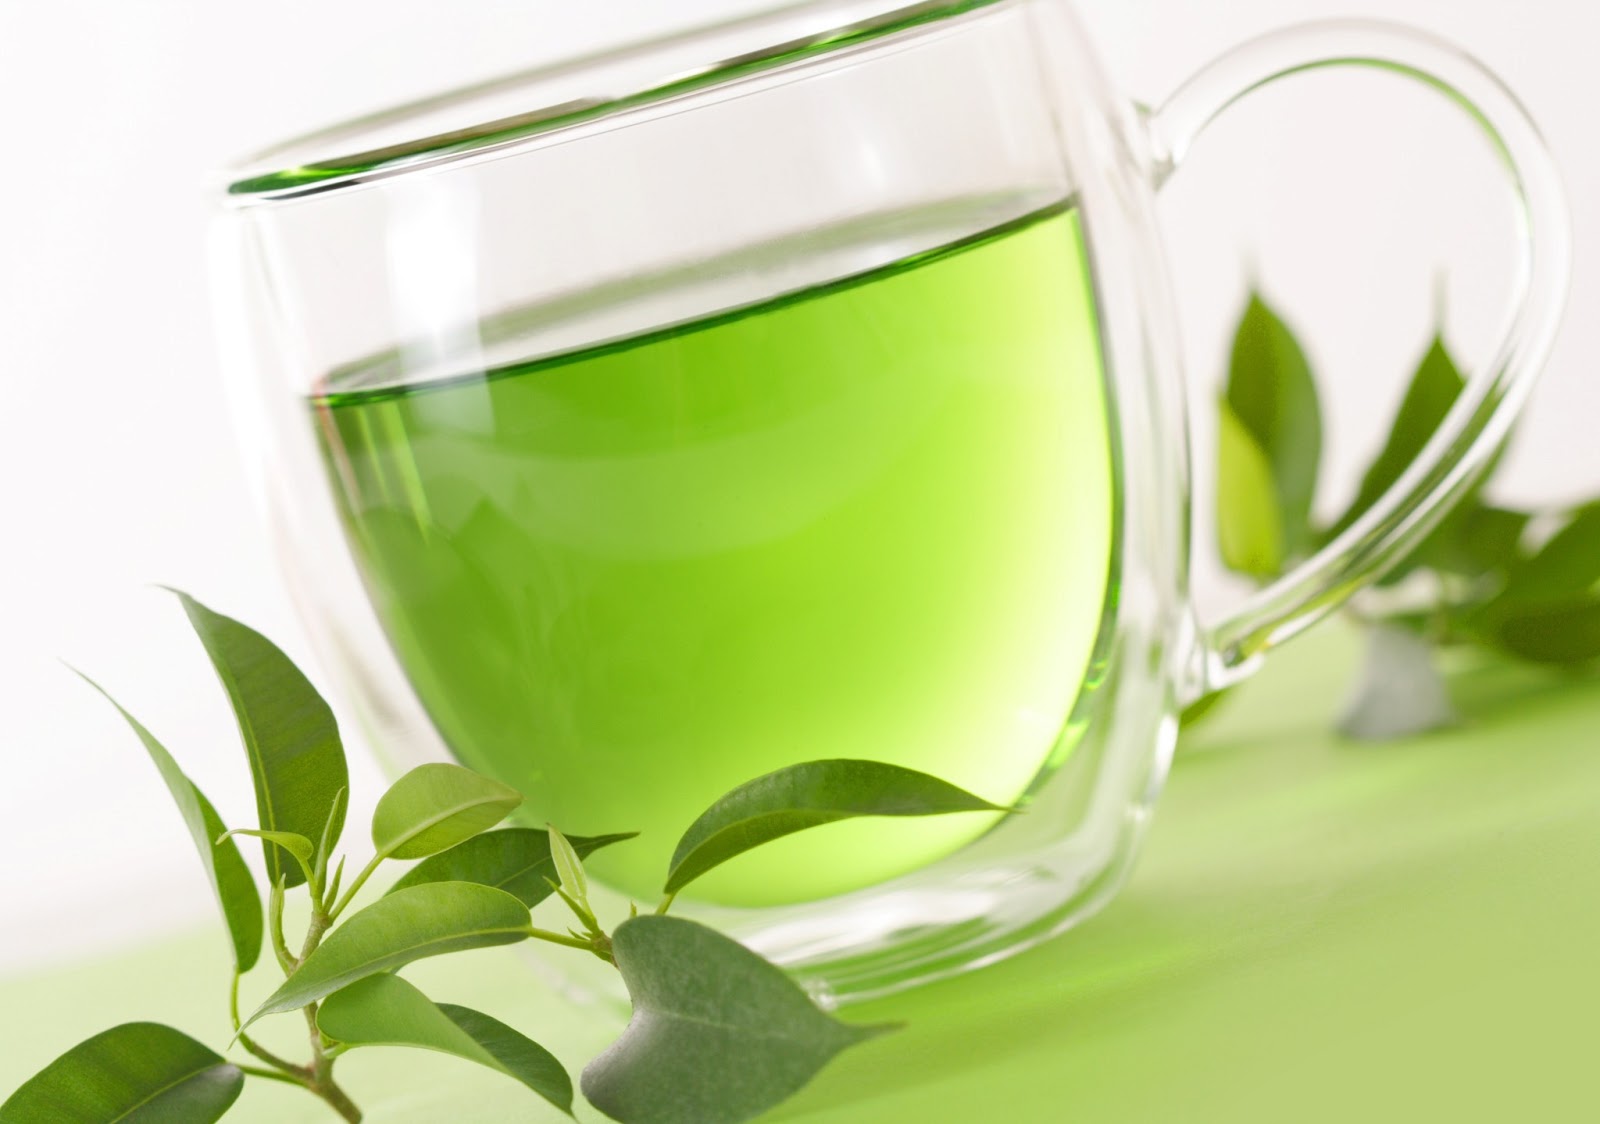 فوائد الشاي الأخضر التي أثبتها العلم خارقة: 6 أشياء ستحدث لجسمك بعد 5 أيام من شربه بانتظام